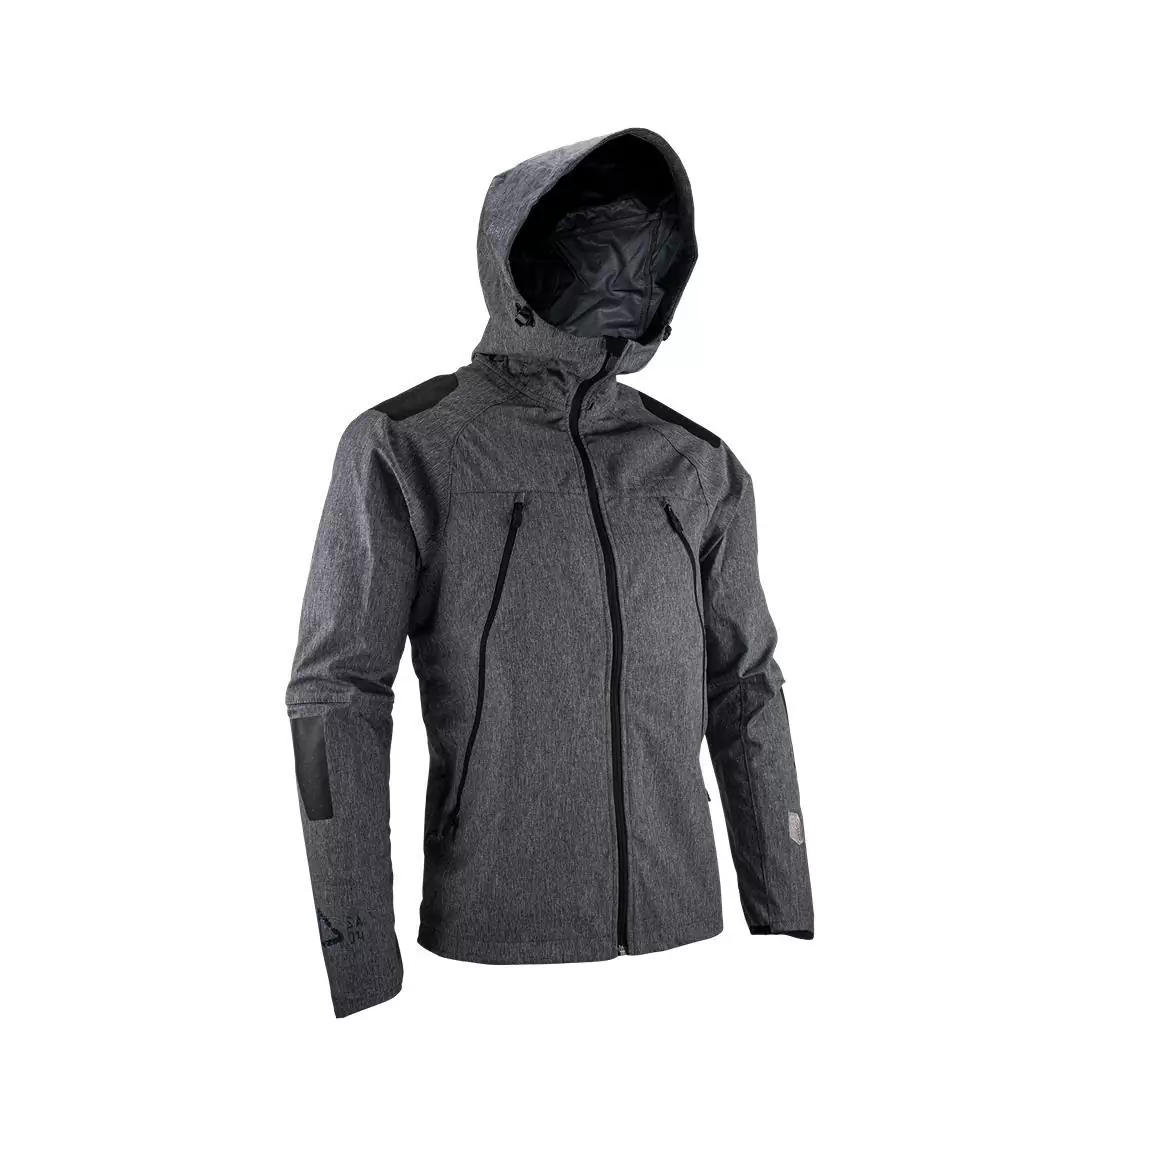 Mtb Hydradri 4.0 waterproof jacket Black size XS - image